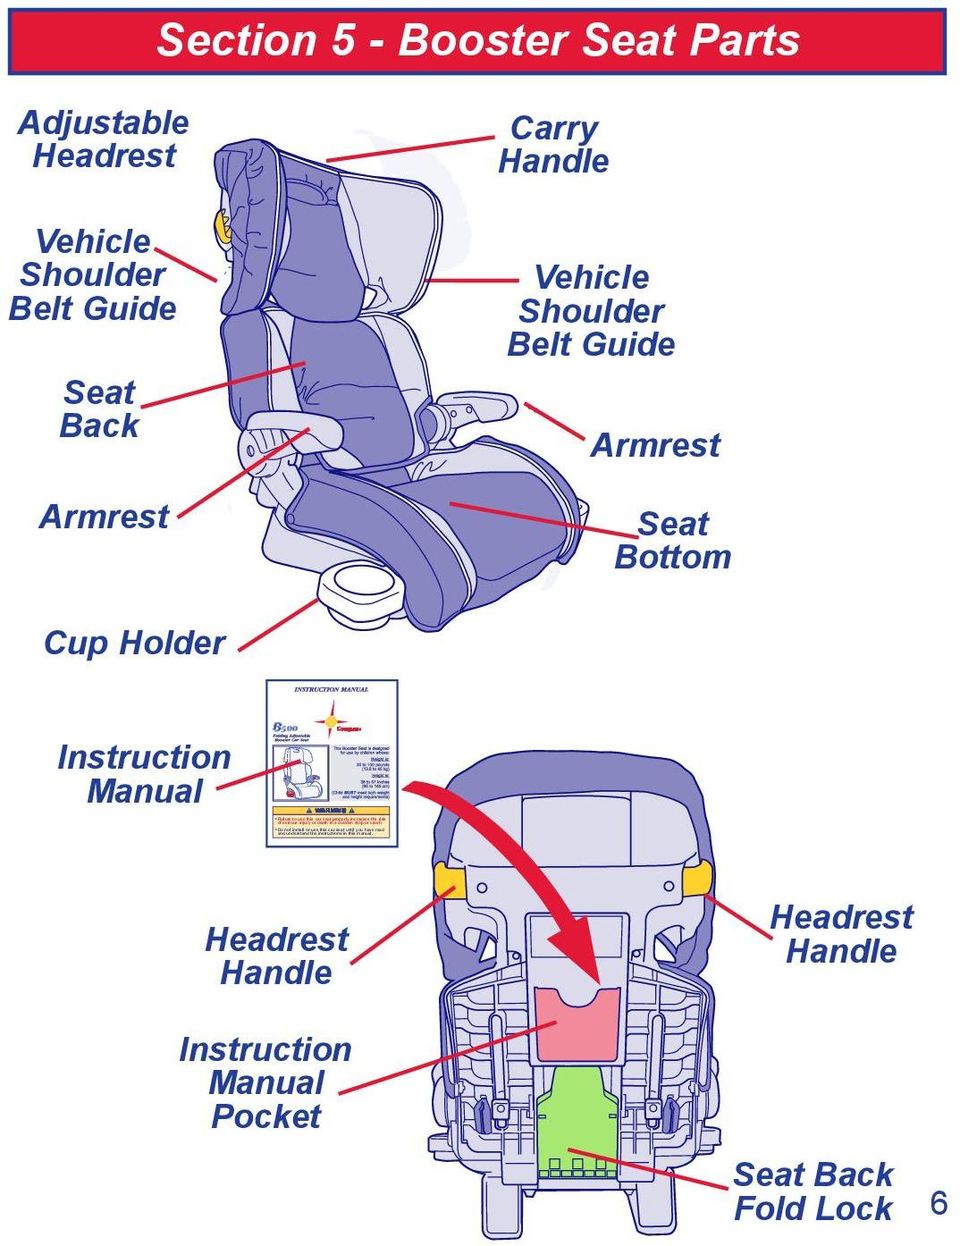 Section 5 - Booster Seat Parts Adjustable Headrest Vehicle Shoulder Belt Guide Seat Back Armrest Carry Handle Vehicle